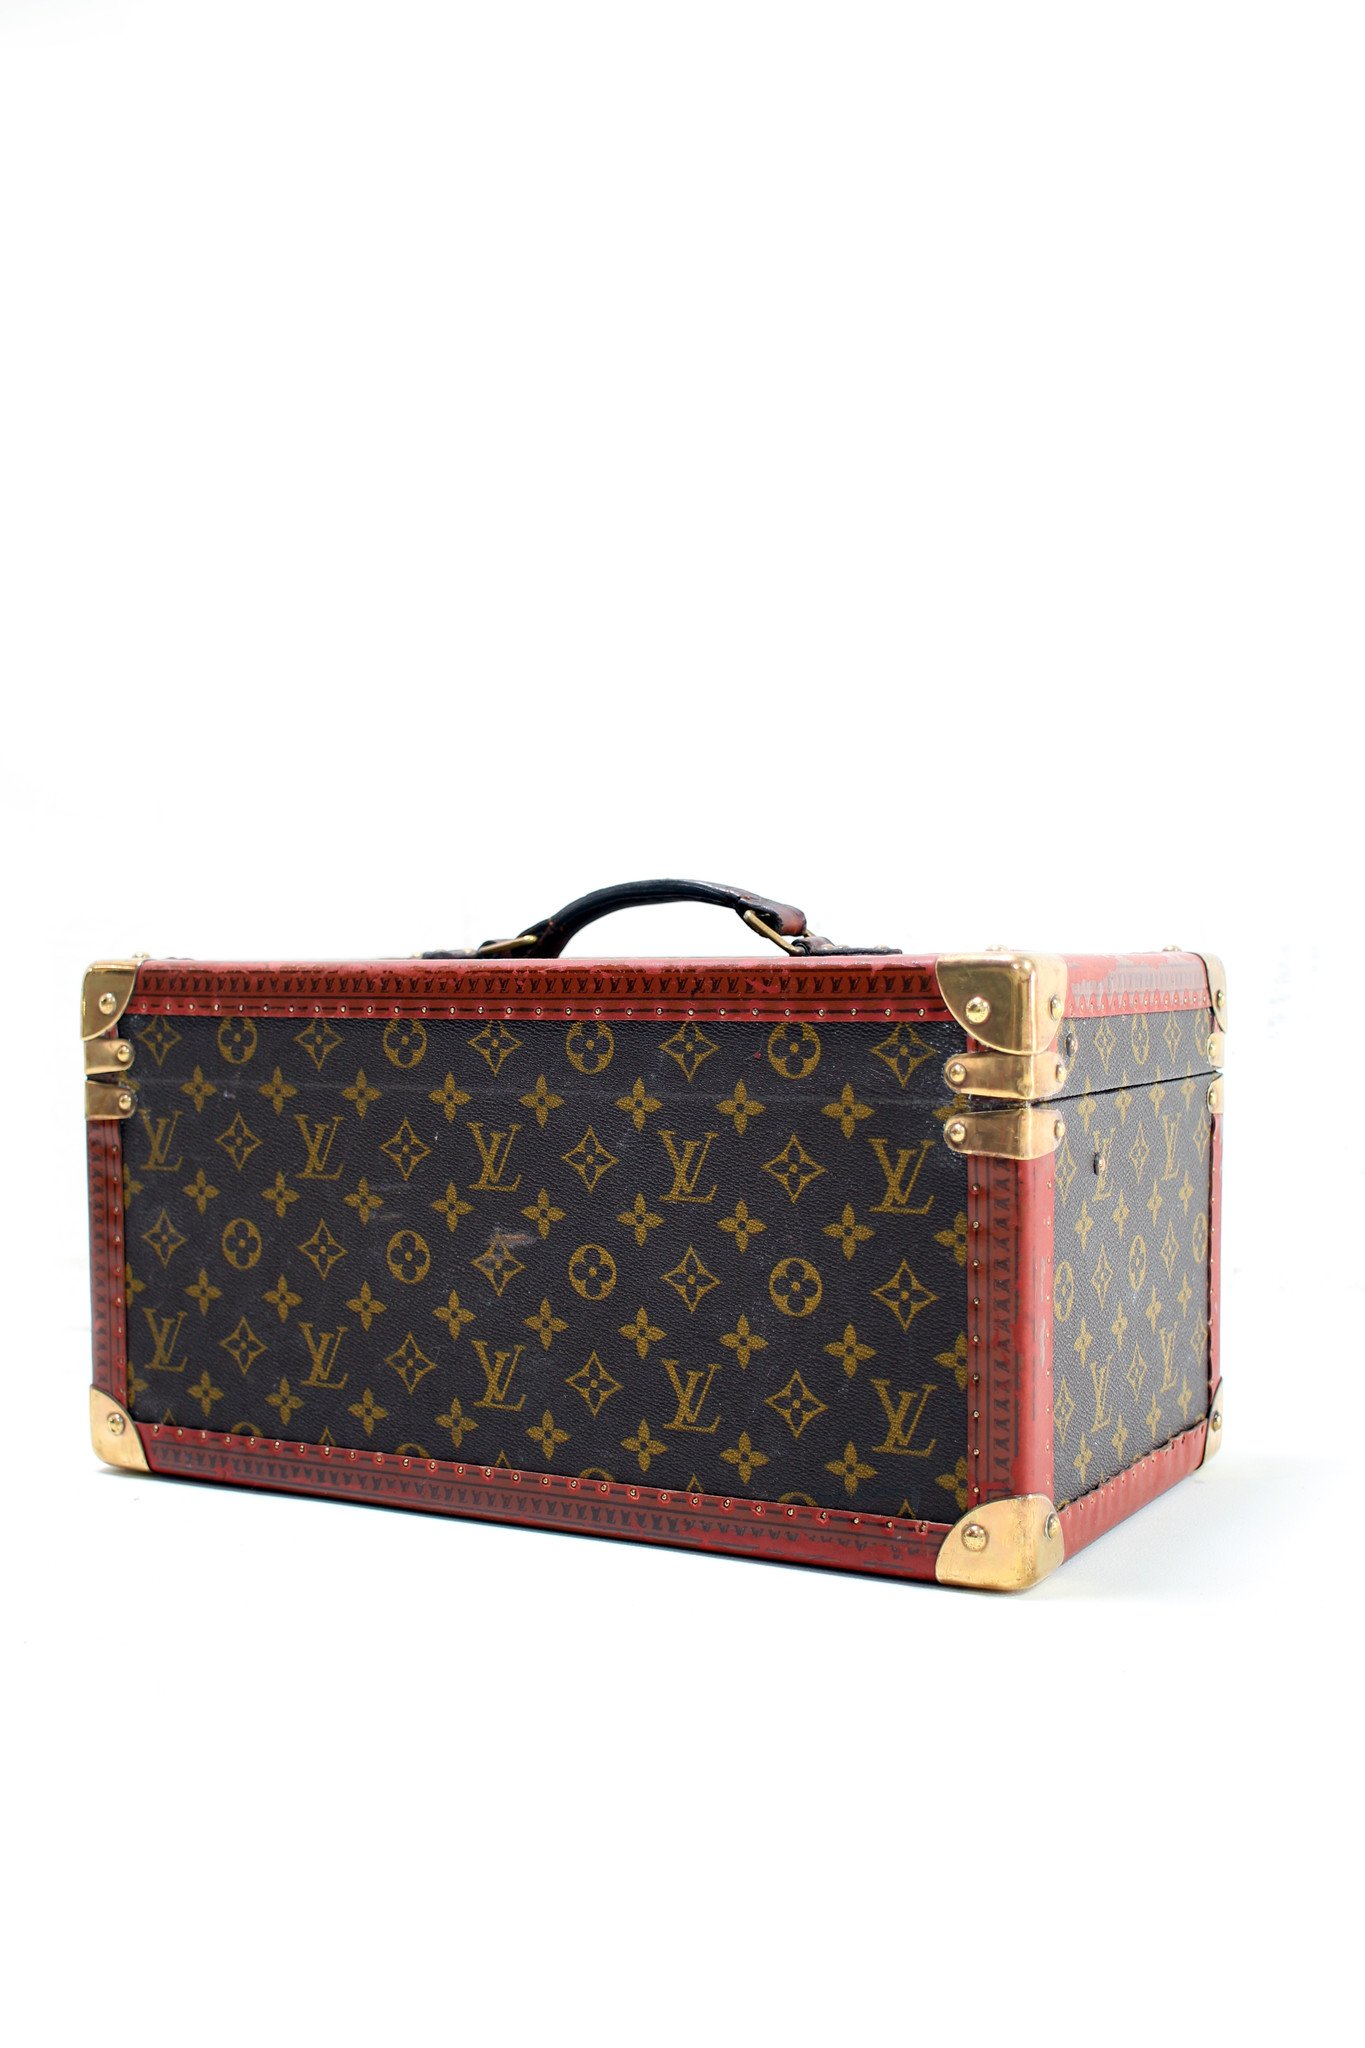 Vintage Louis Vuitton beauty case 1960's